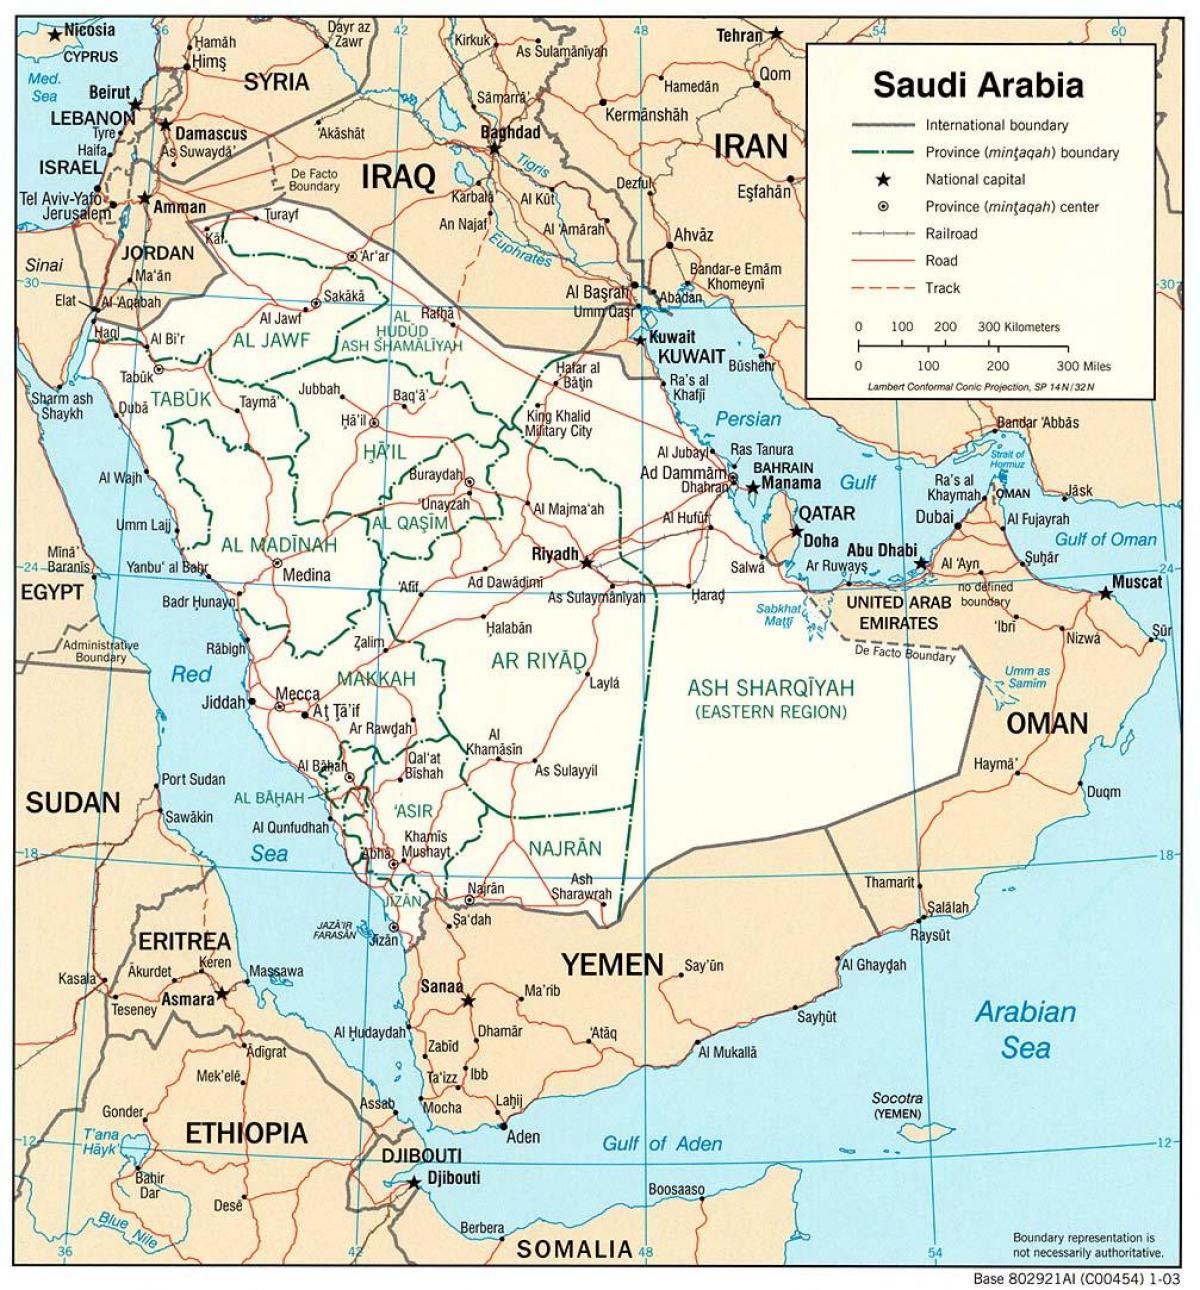 Saudi-Arabia tiet kartta